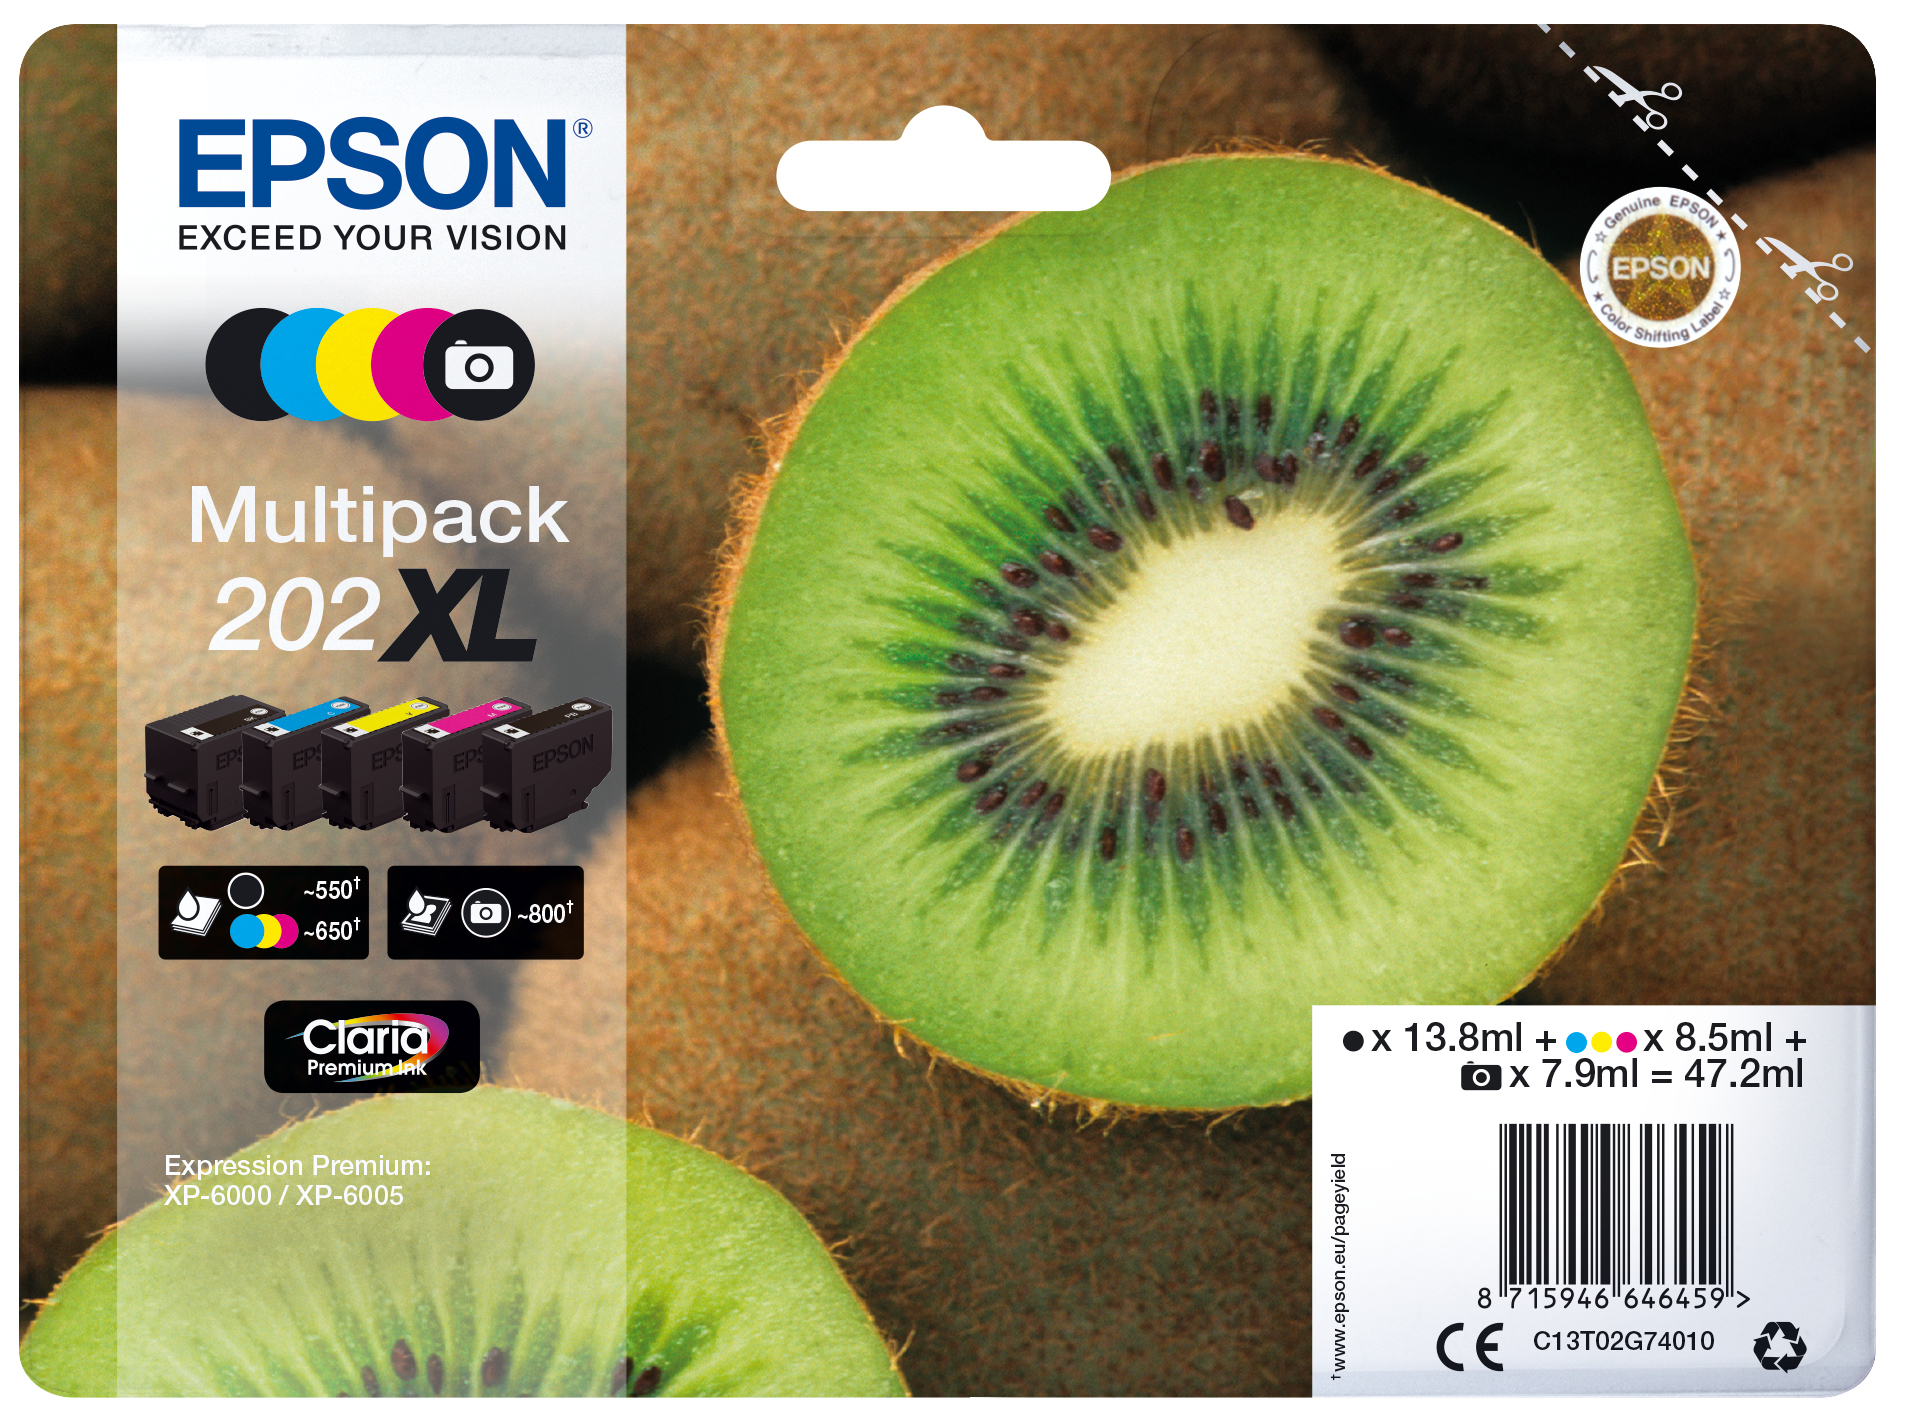 Epson Multipack 5-colours 202XL Claria Premium Ink